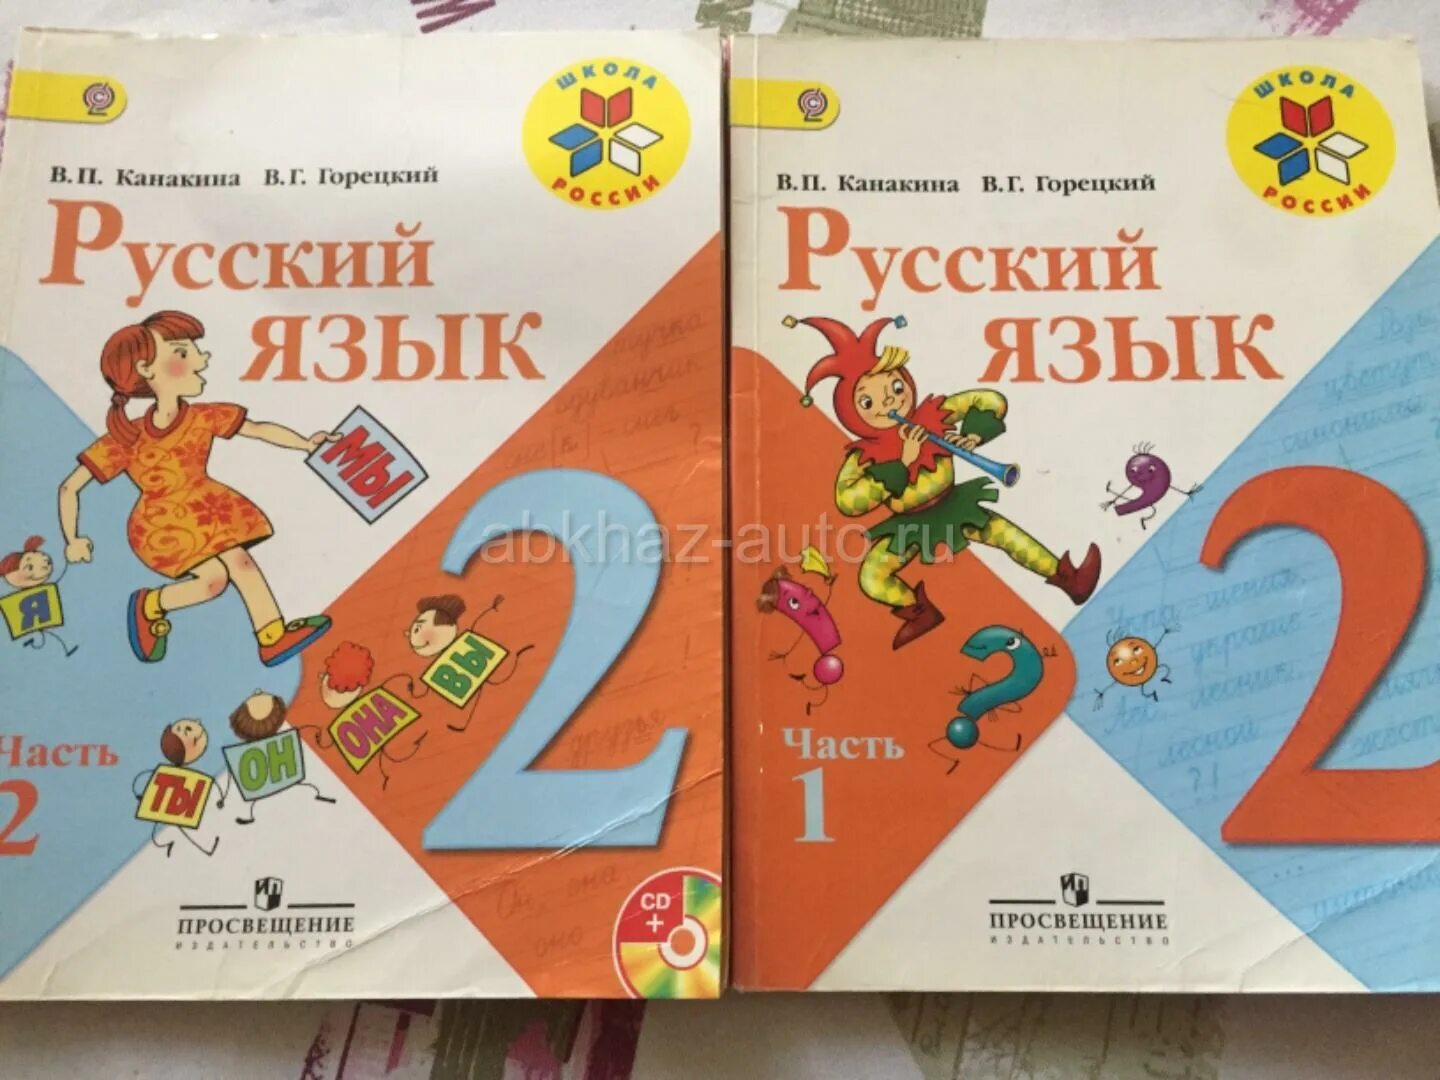 Русский язык 2 класс учебник. Русский язык 2 класс 2 часть Канакина. Учебник по русскому языку 2 класс. Русский язык 2 класс учебник 2 часть.